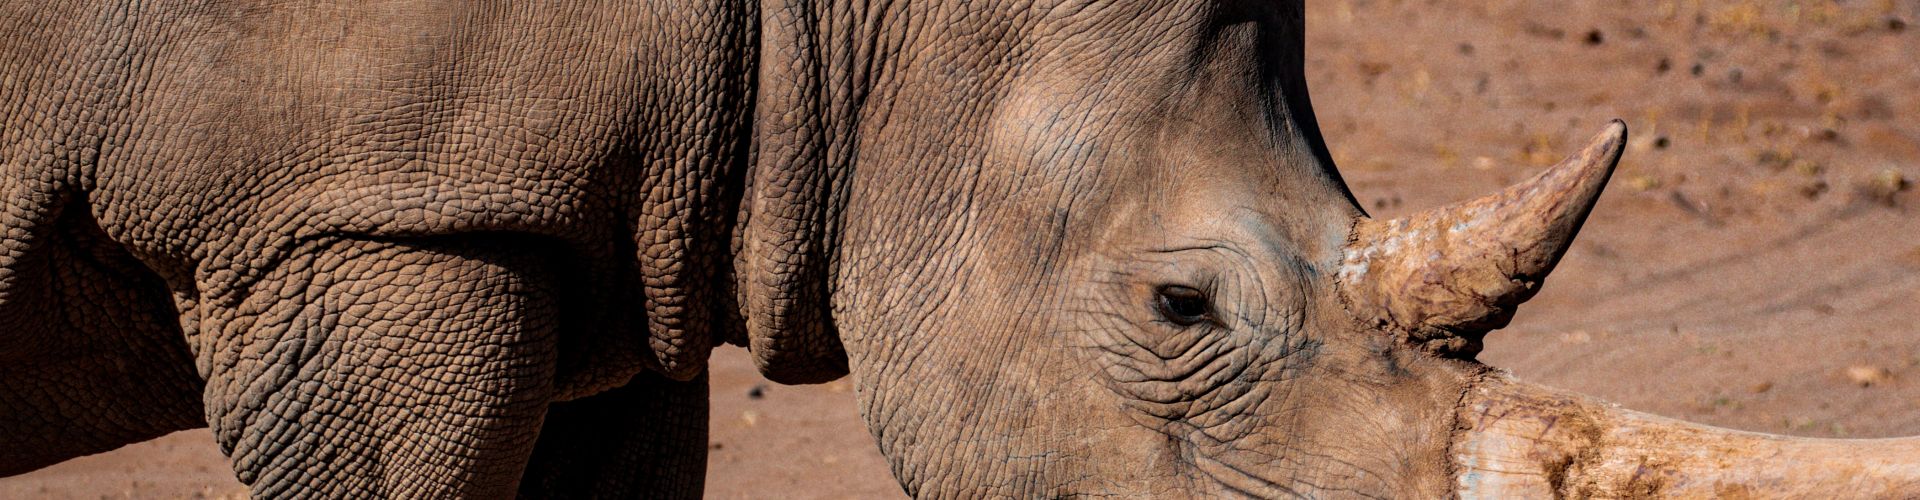 Un rhinocéros africain, une espèce en danger critique d'extinction figurant sur la liste rouge de l'UICN.